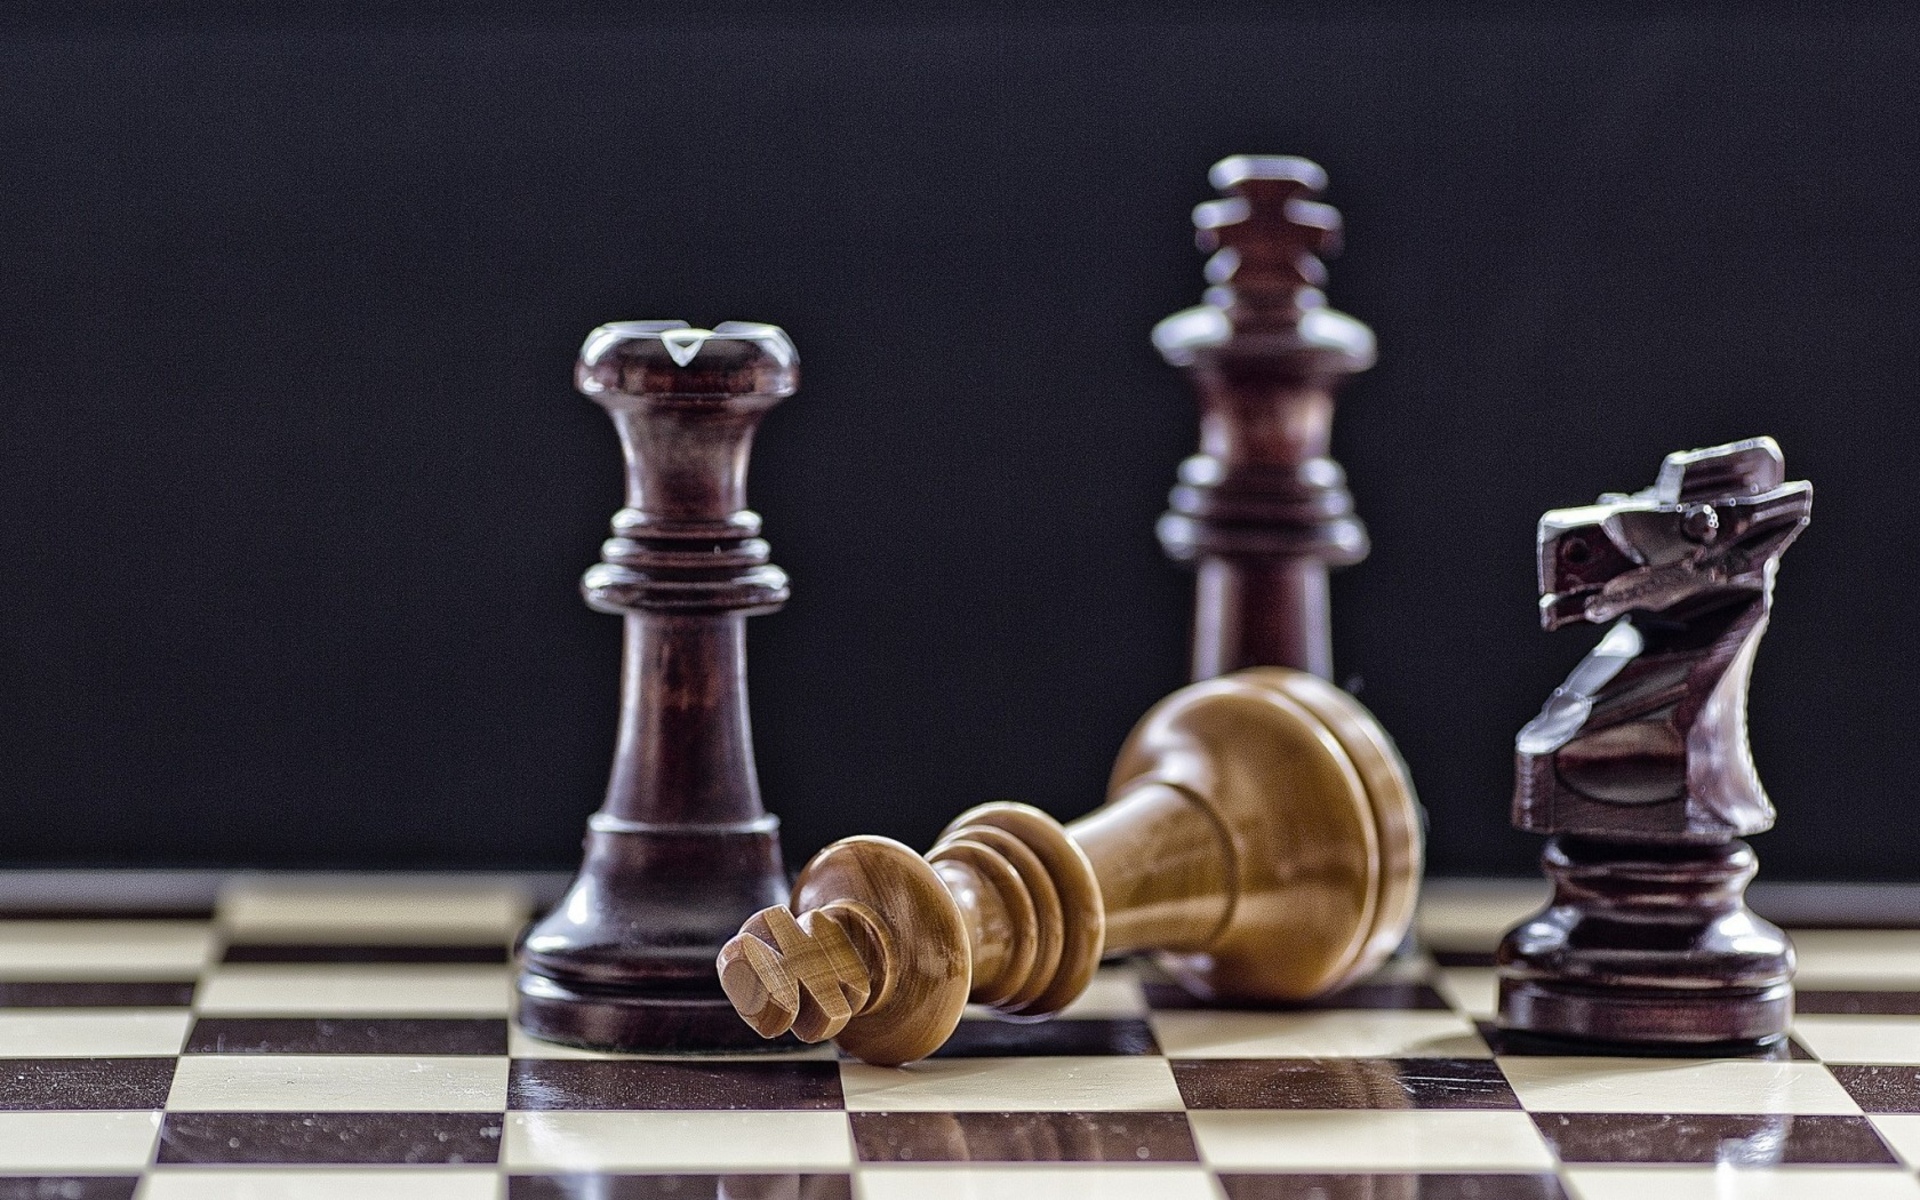 Jogo de xadrez foto de stock. Imagem de jogo, cavaleiro - 3091432